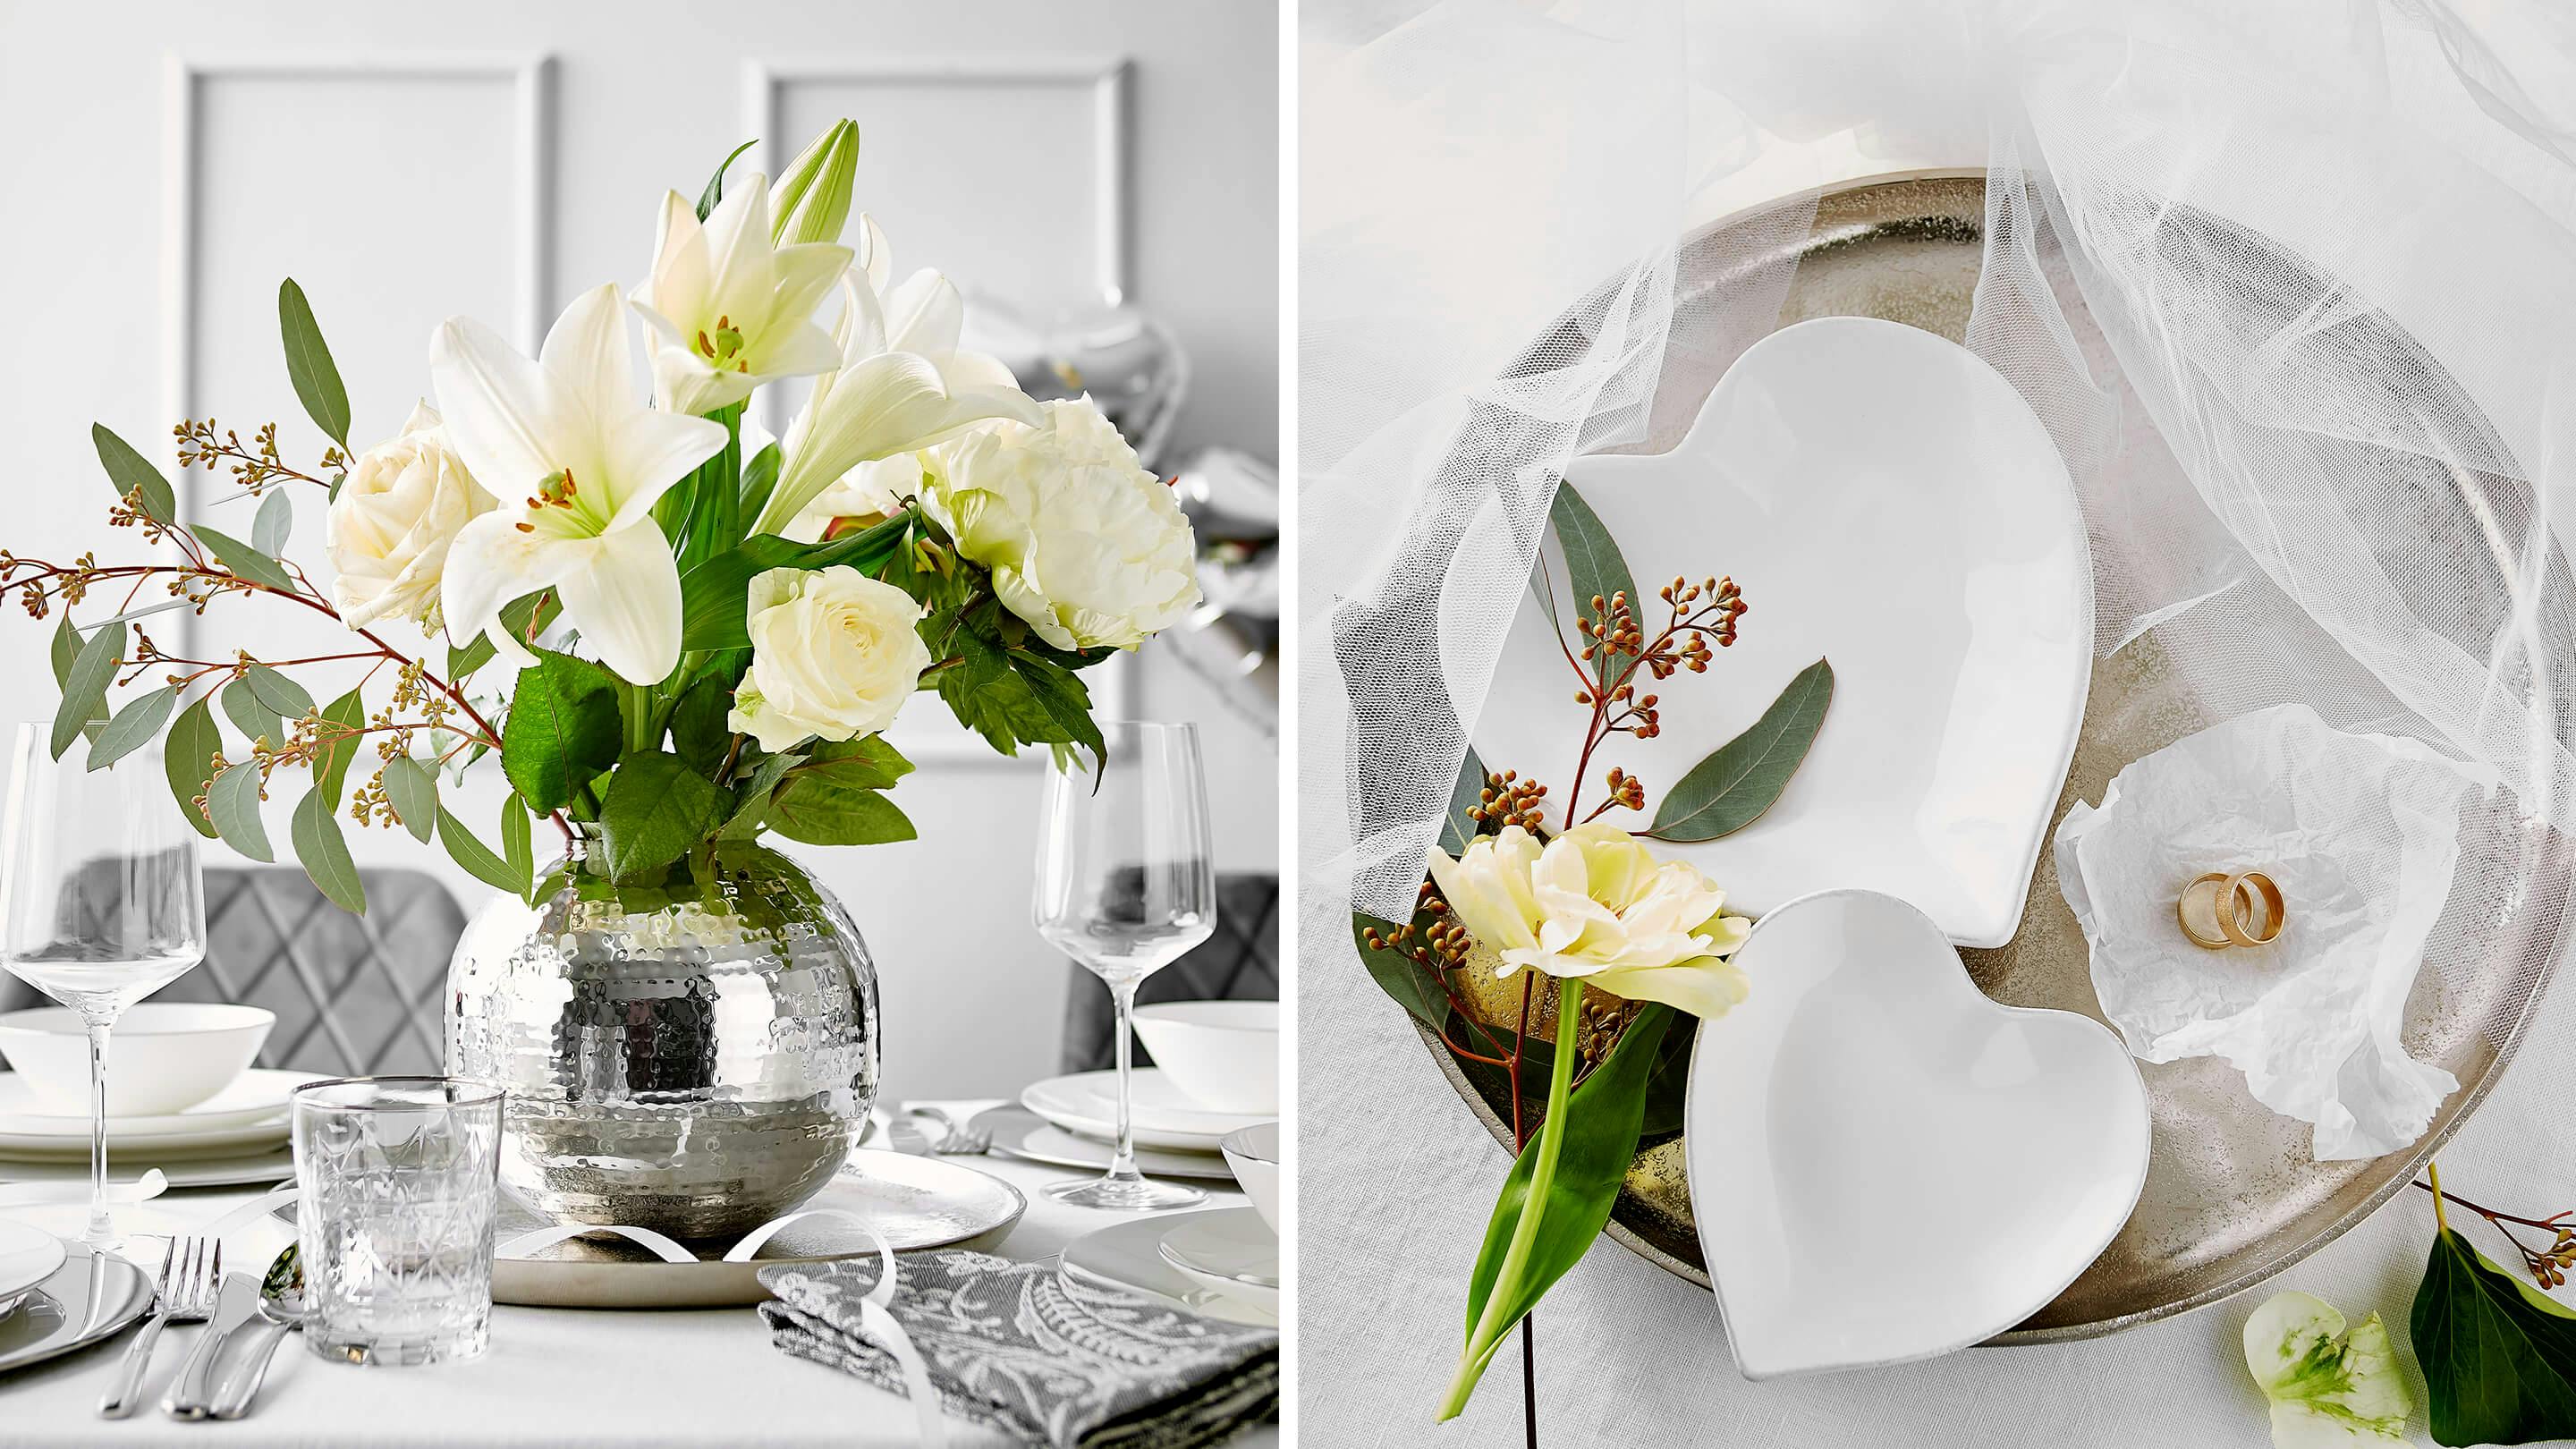 Blumen als Hochzeitsdeko (Marke des Geschirrs und der Deko-Accessoires: Butlers).